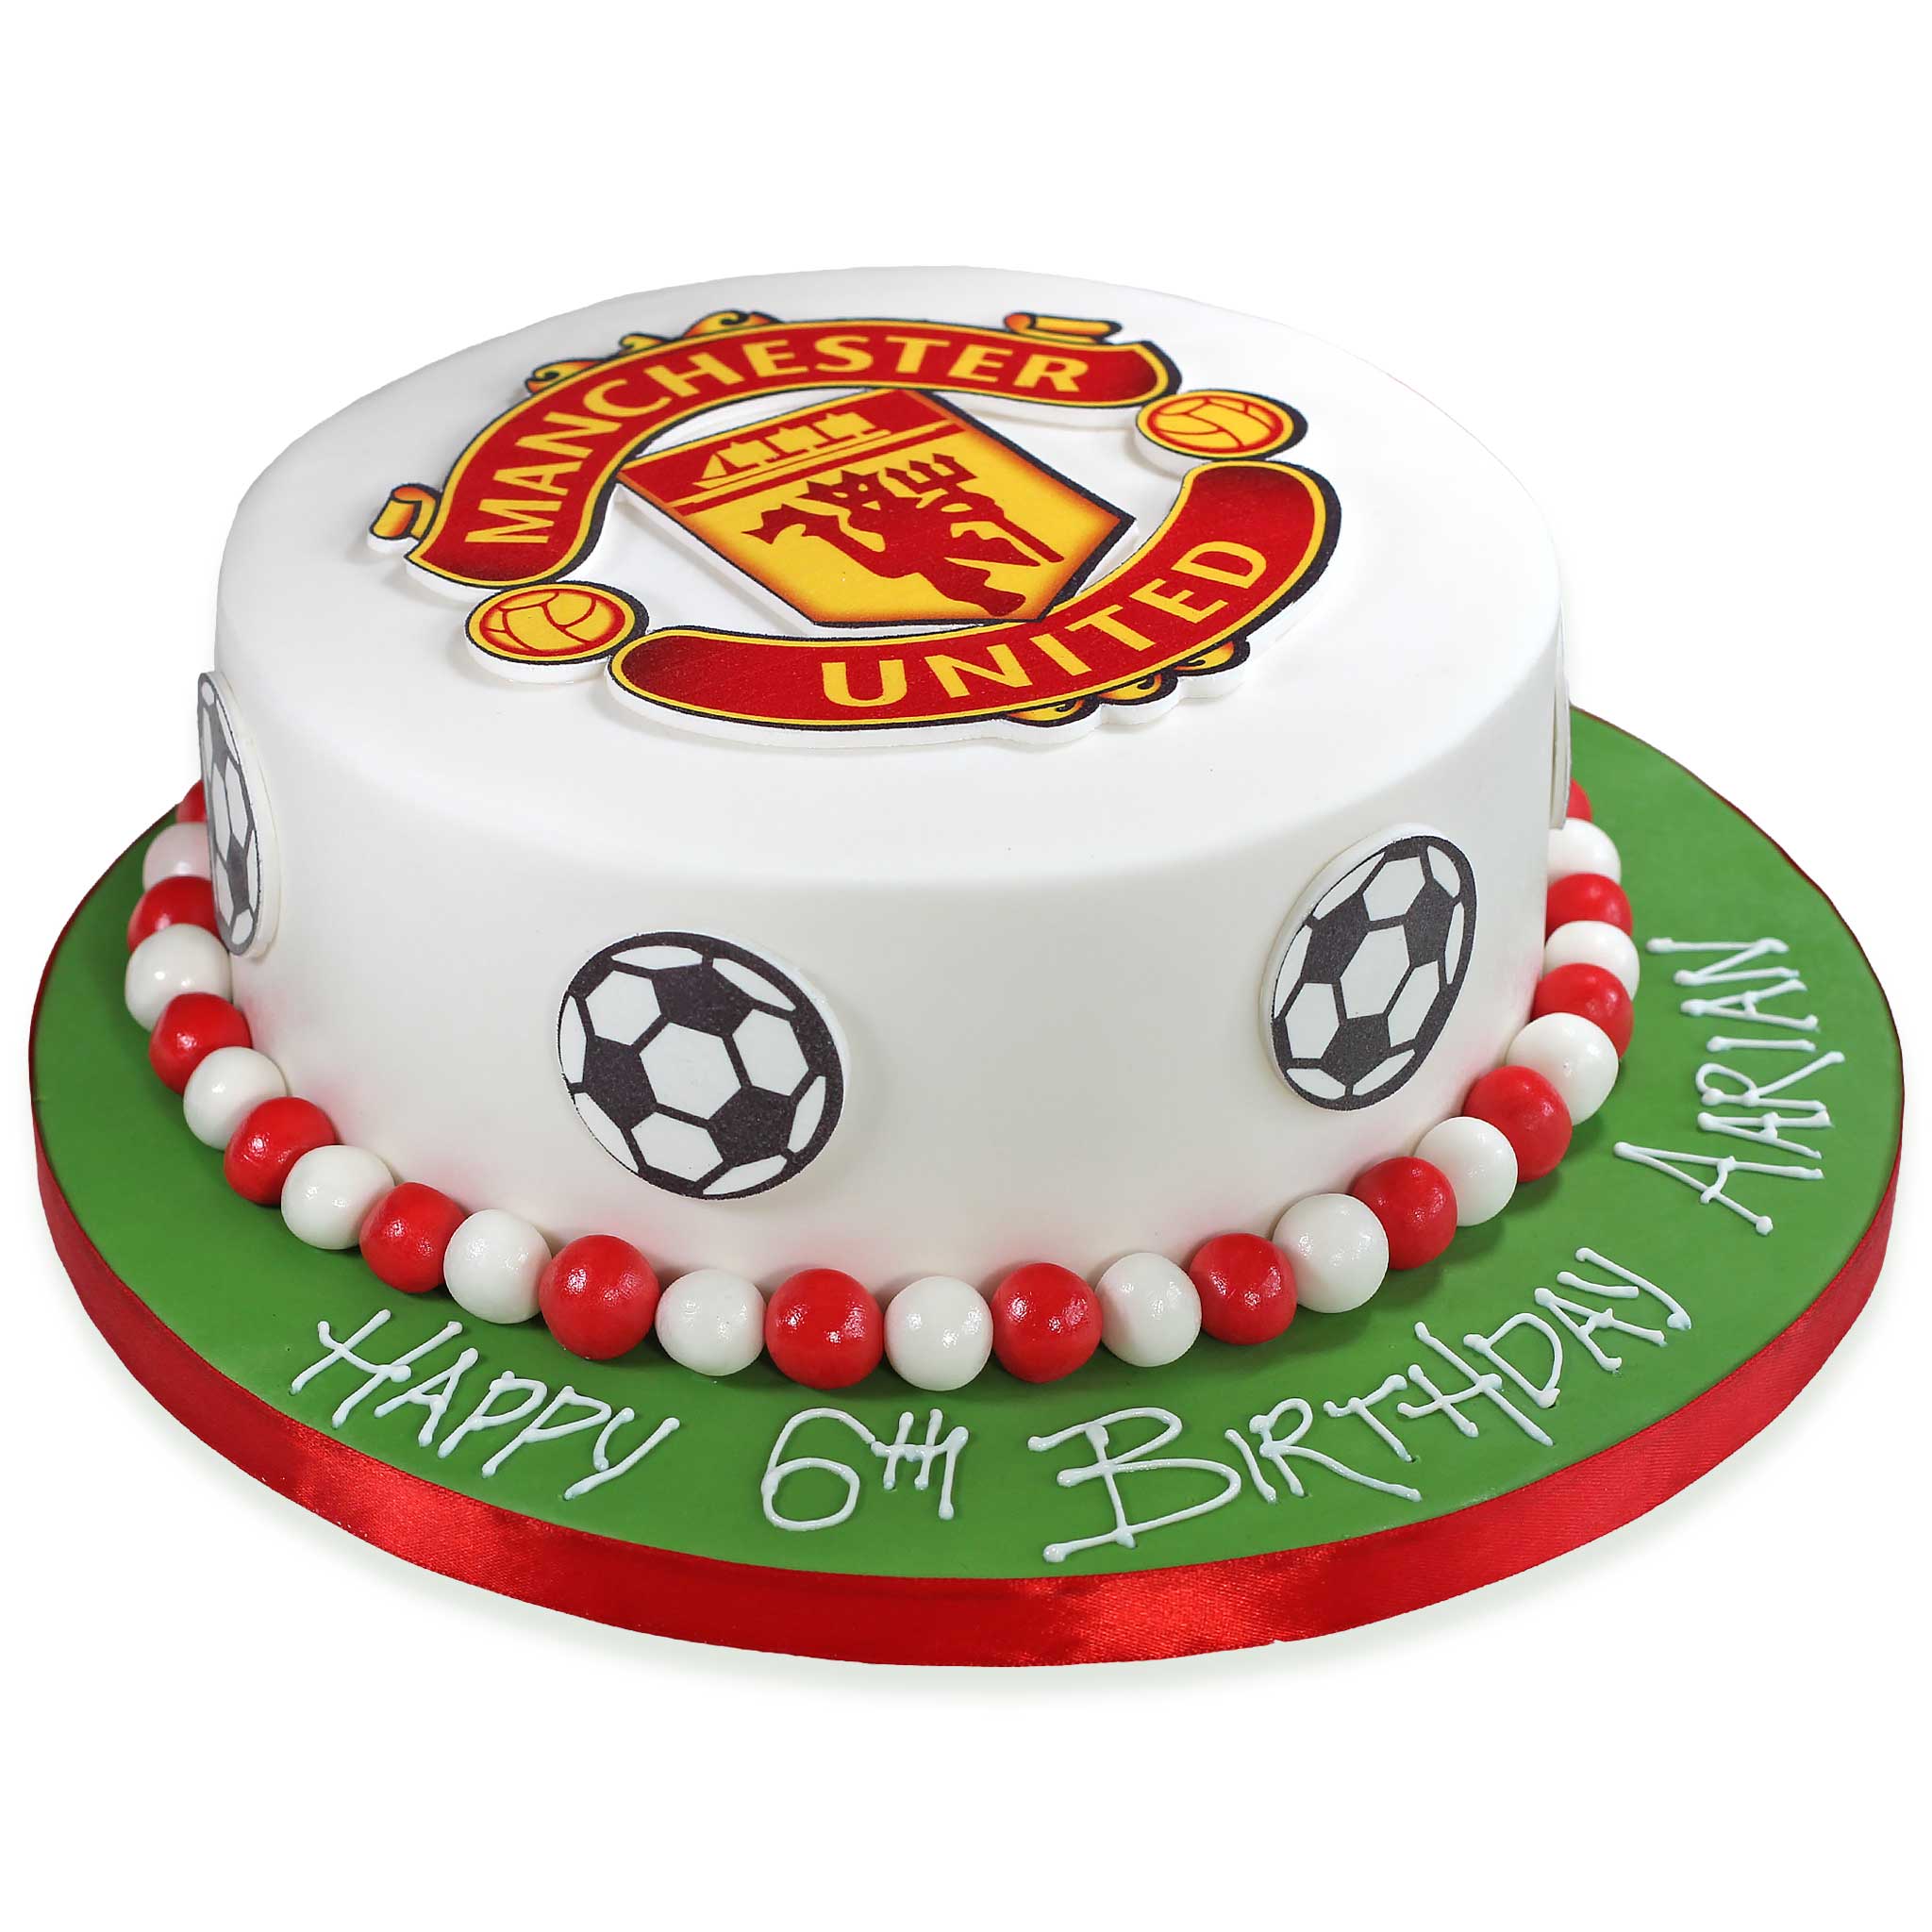 Cooking with Hasmik - Manchester united T shirt cake 👕👕👕⚽️⚽️⚽️  #foothball #manchesterunited #manchester #manchesterunitedtshirt  #manchesterunitedtshirtcake #birthdaycake #adidas #tshirt #cakeofinatagram  #instacakes #amazingcakes #cakeoftheday ...